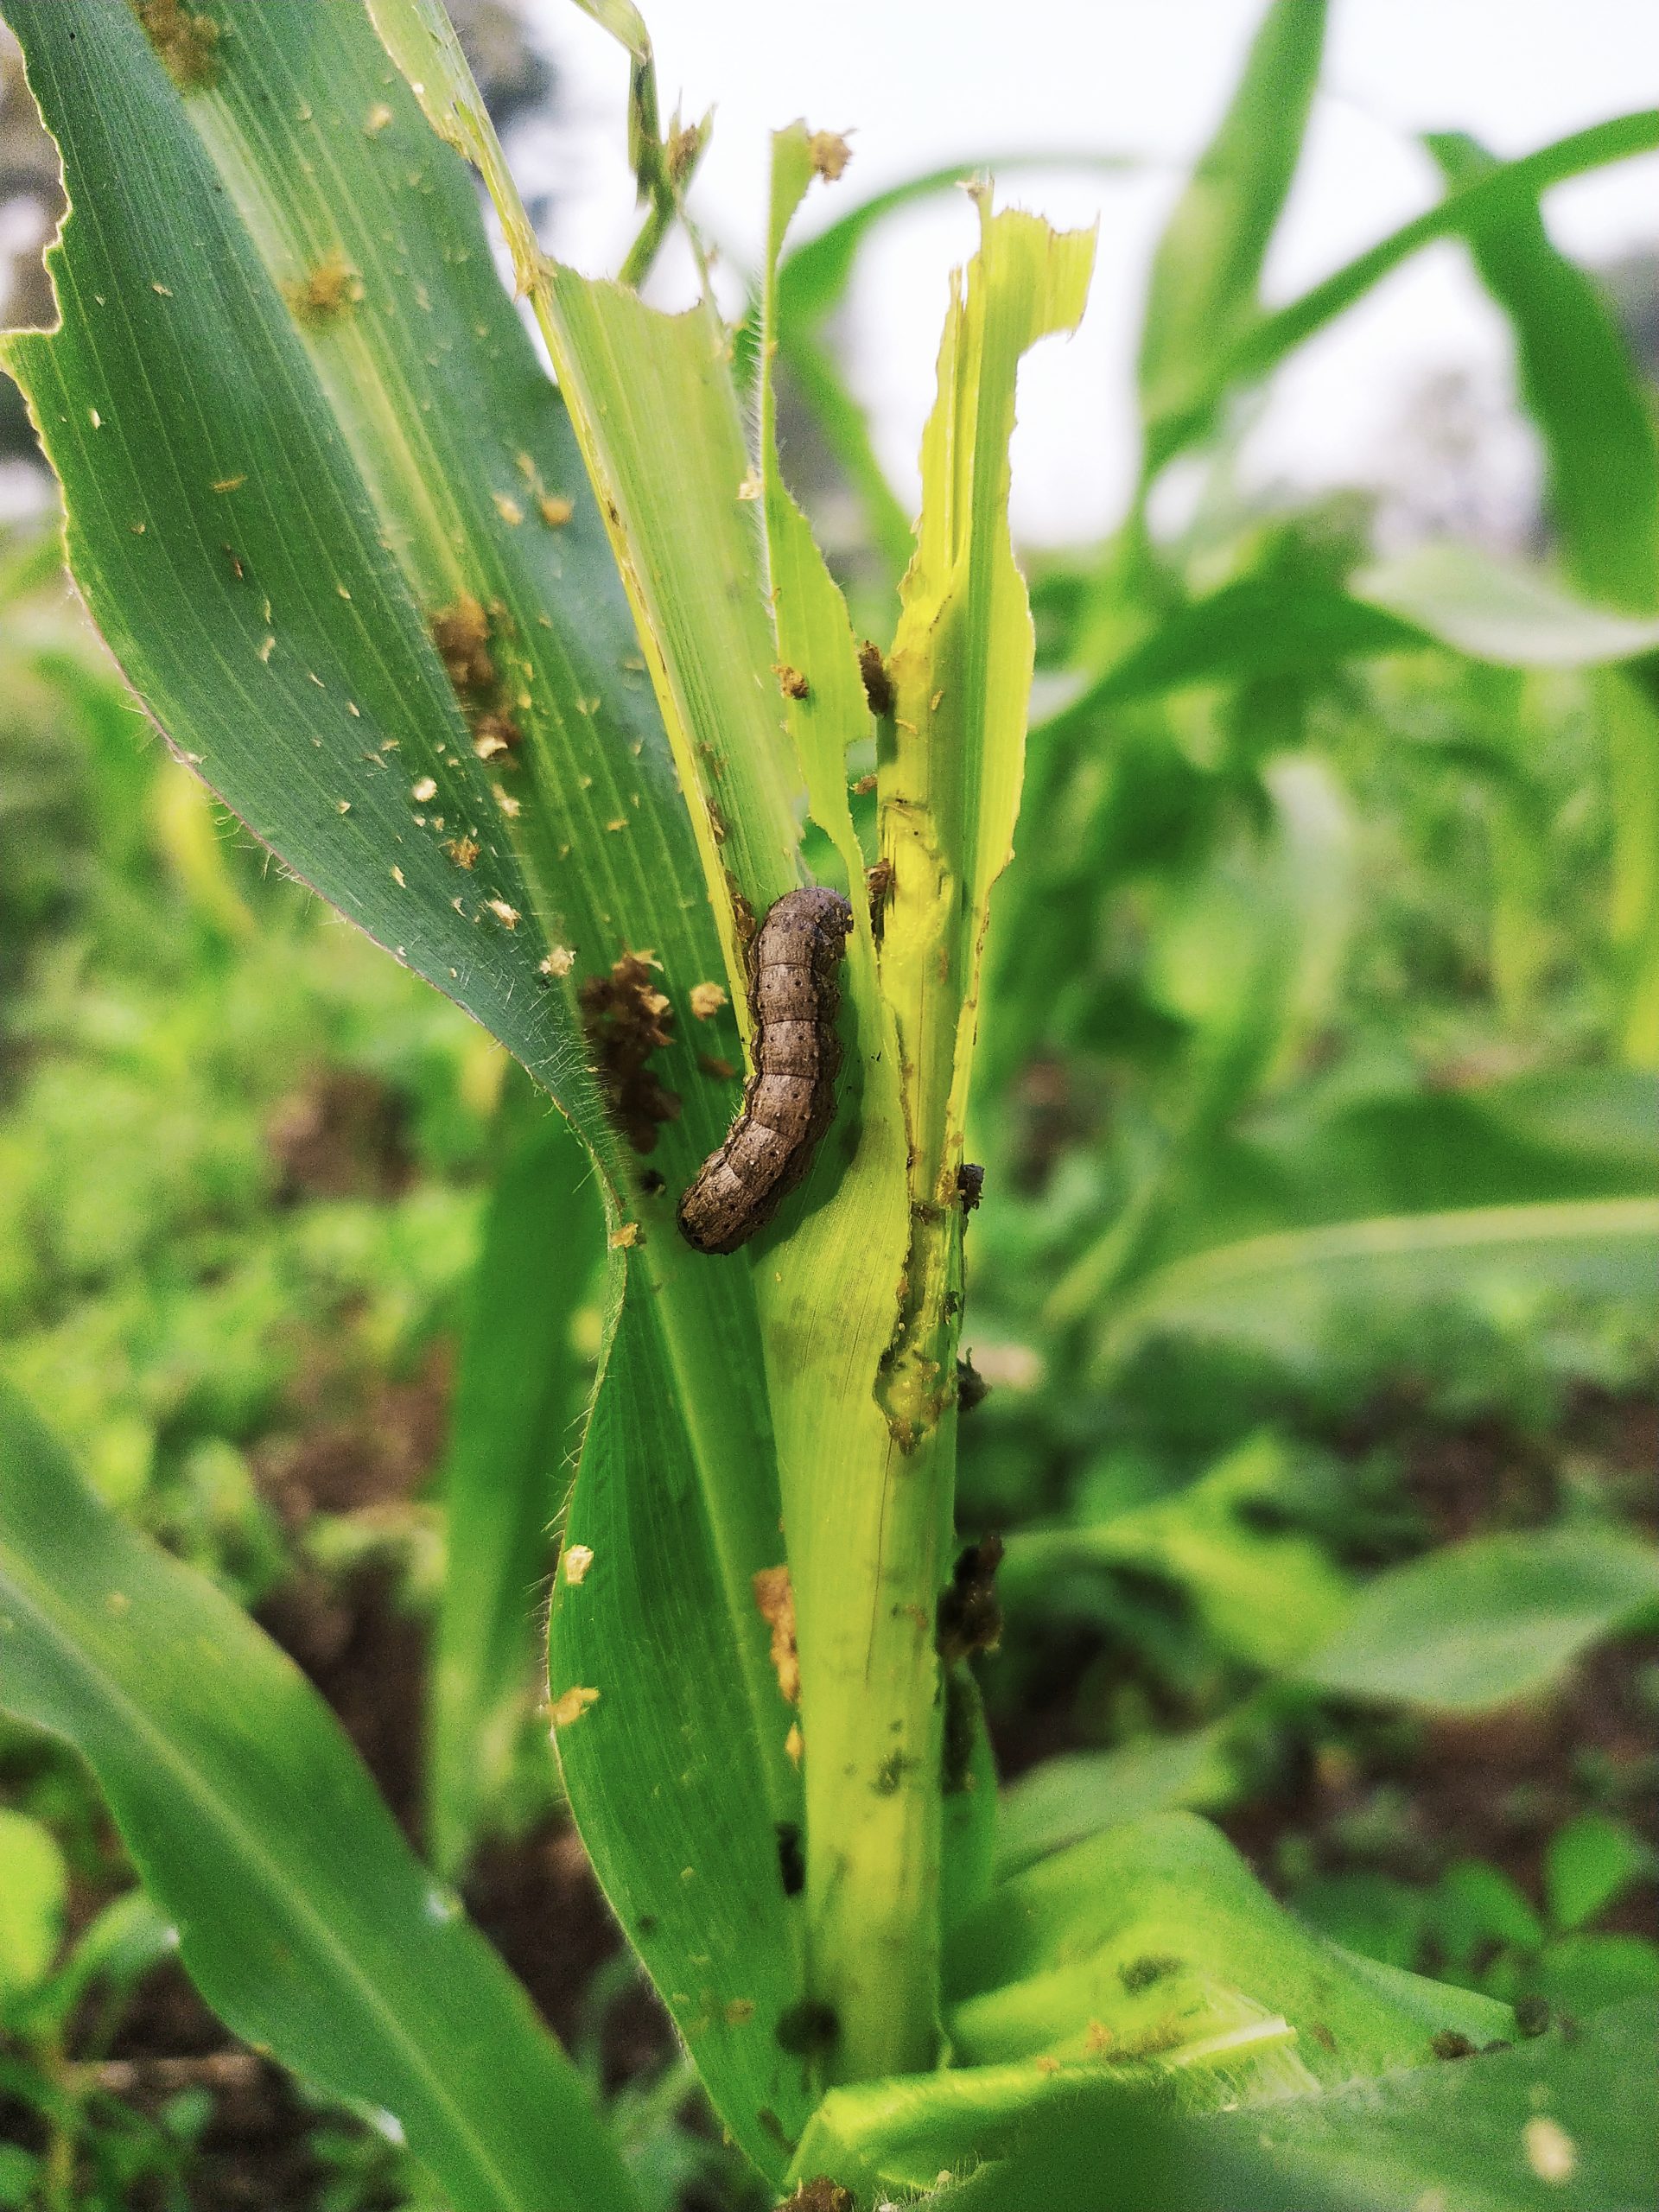 worm on a crop